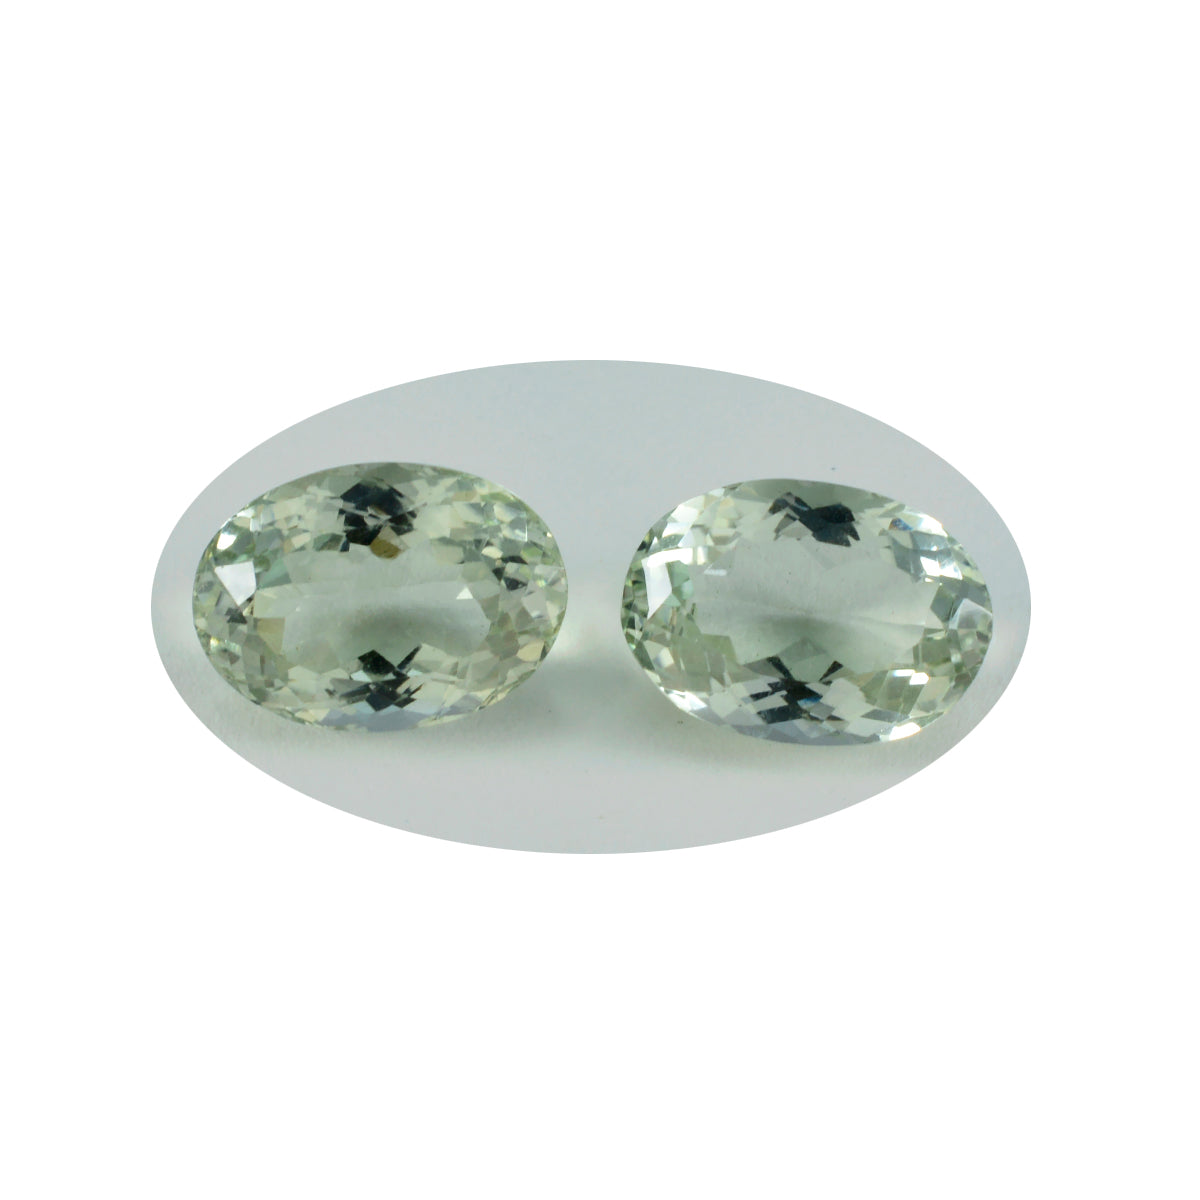 Riyogems 1PC Green Amethyst Faceted 10x14 mm Oval Shape A Quality Gems